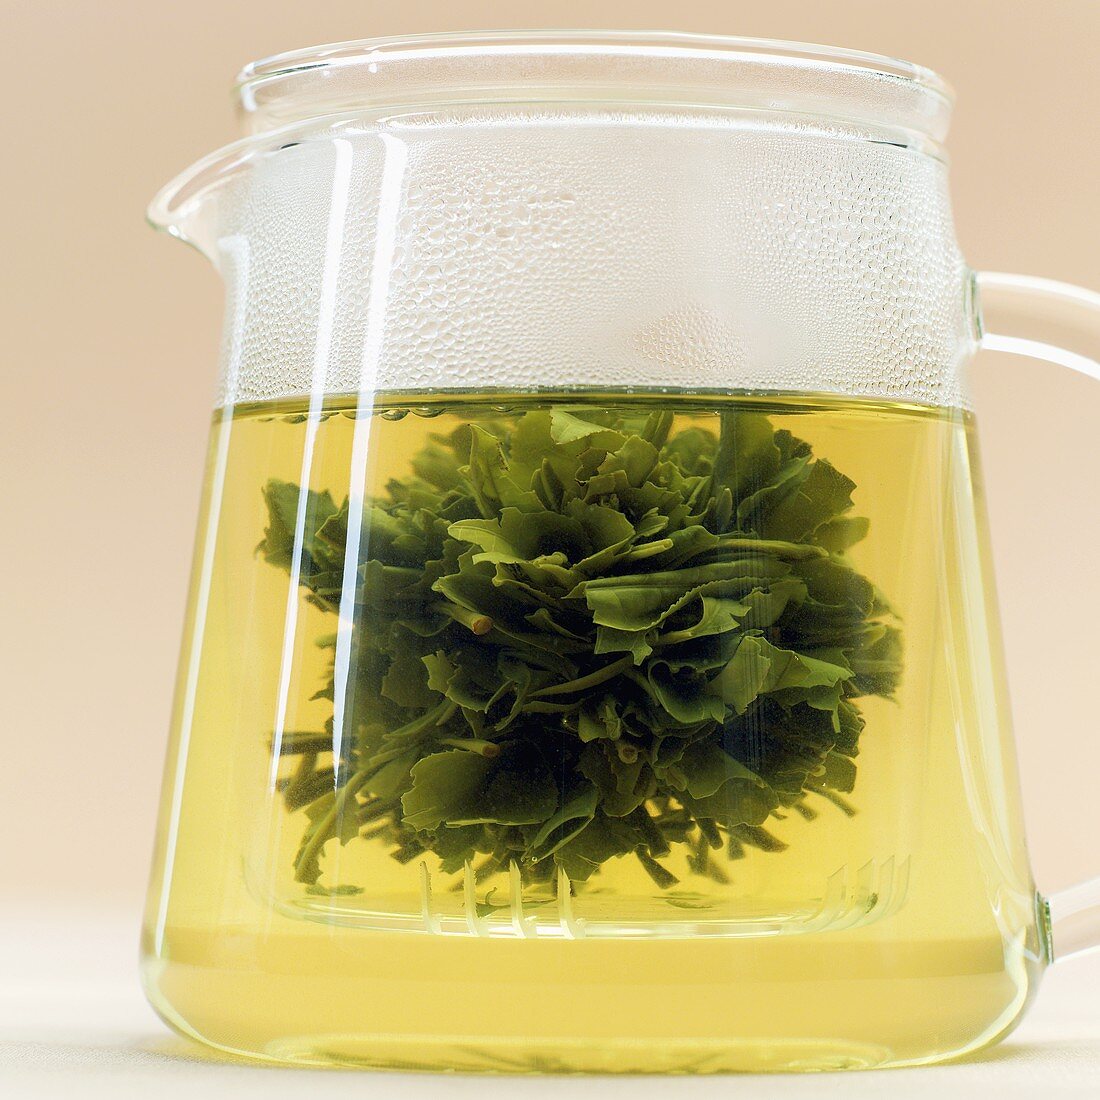 Green tea in glass jug